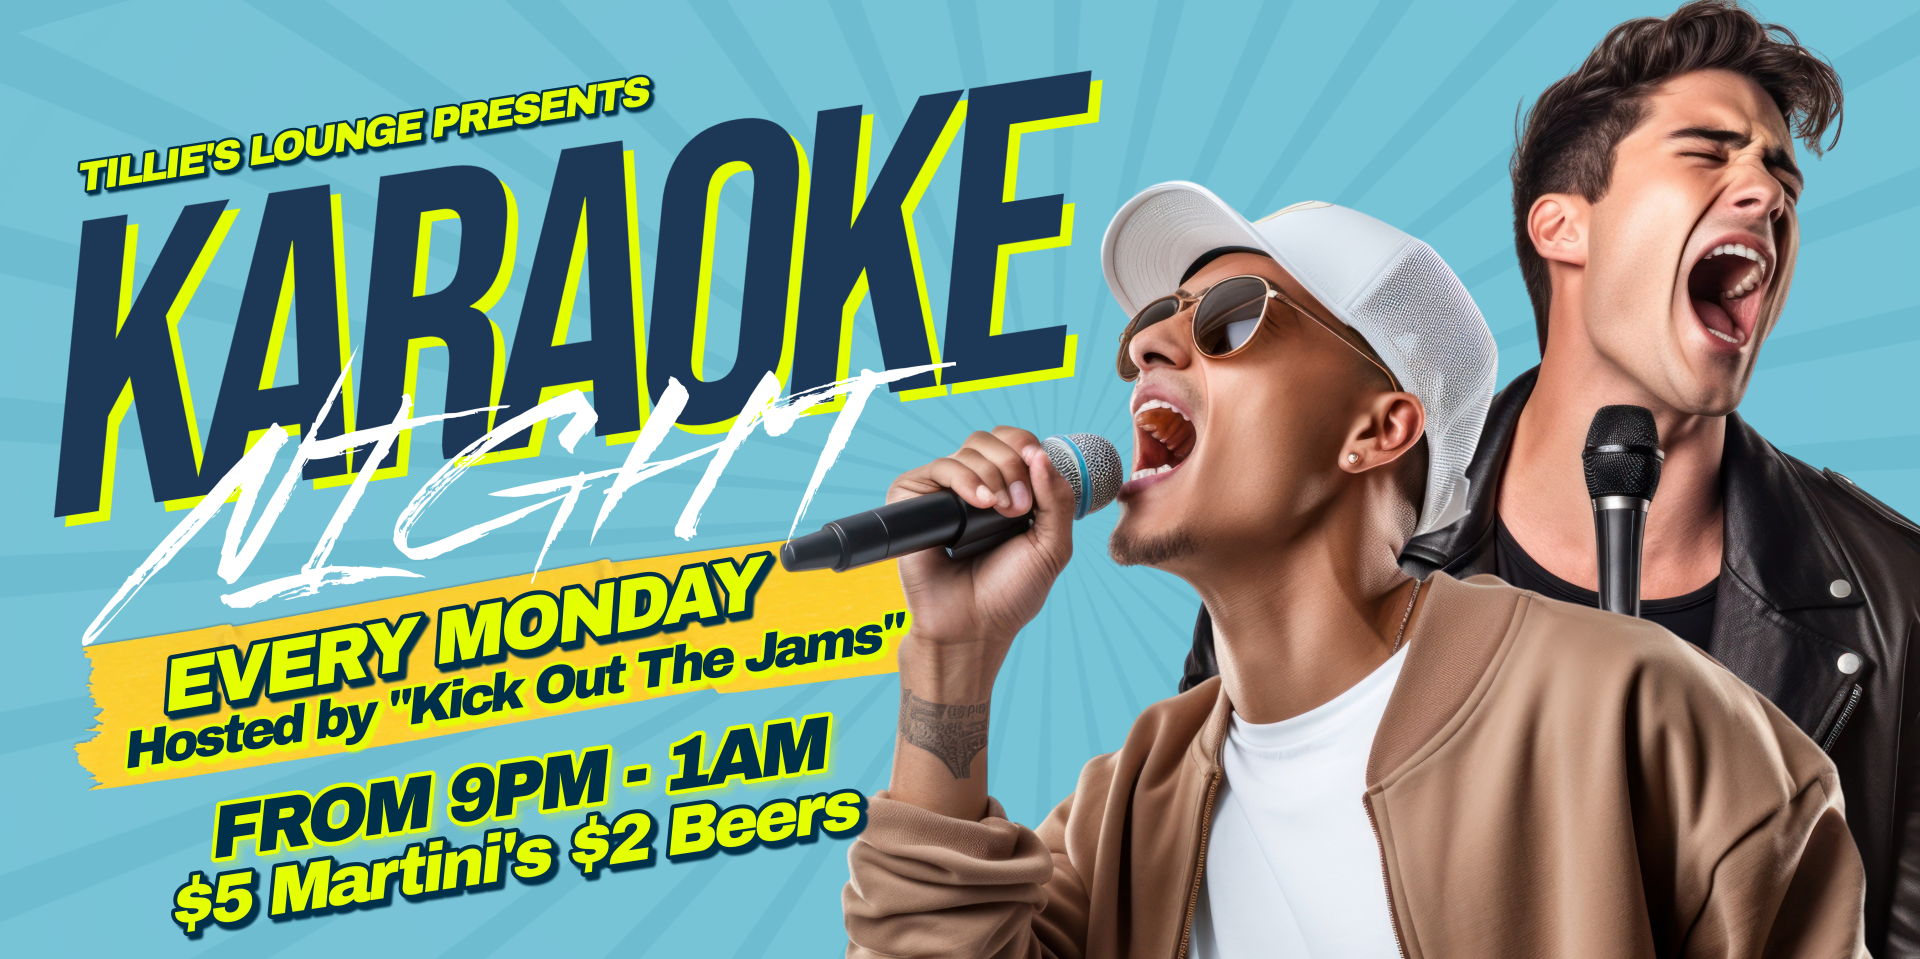 Karaoke Monday promotional image